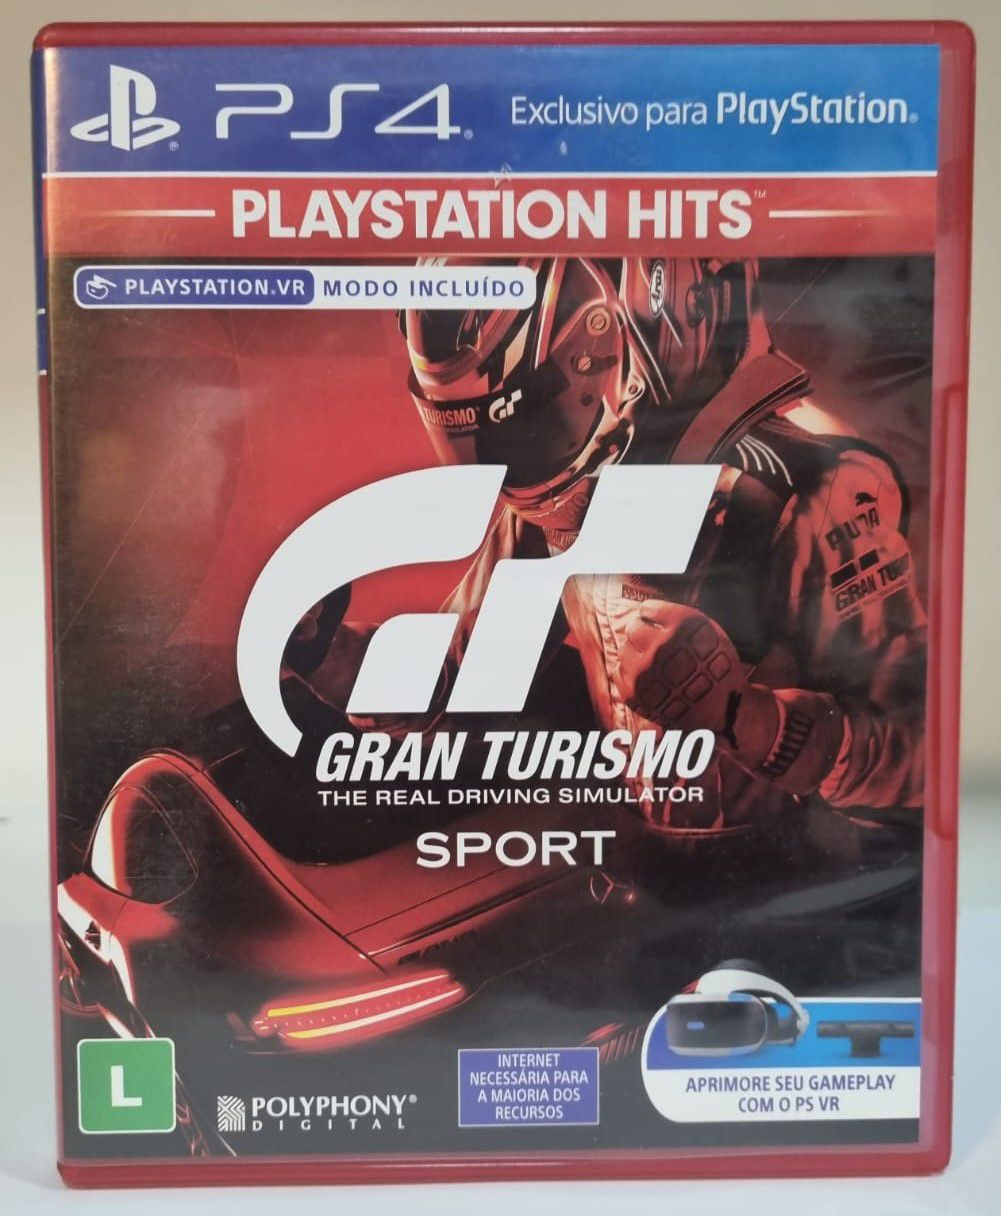 OFERTA: Jogo Gran Turismo 7, Edição Padrão, Mídia Física, PS4 por R$ 105,29